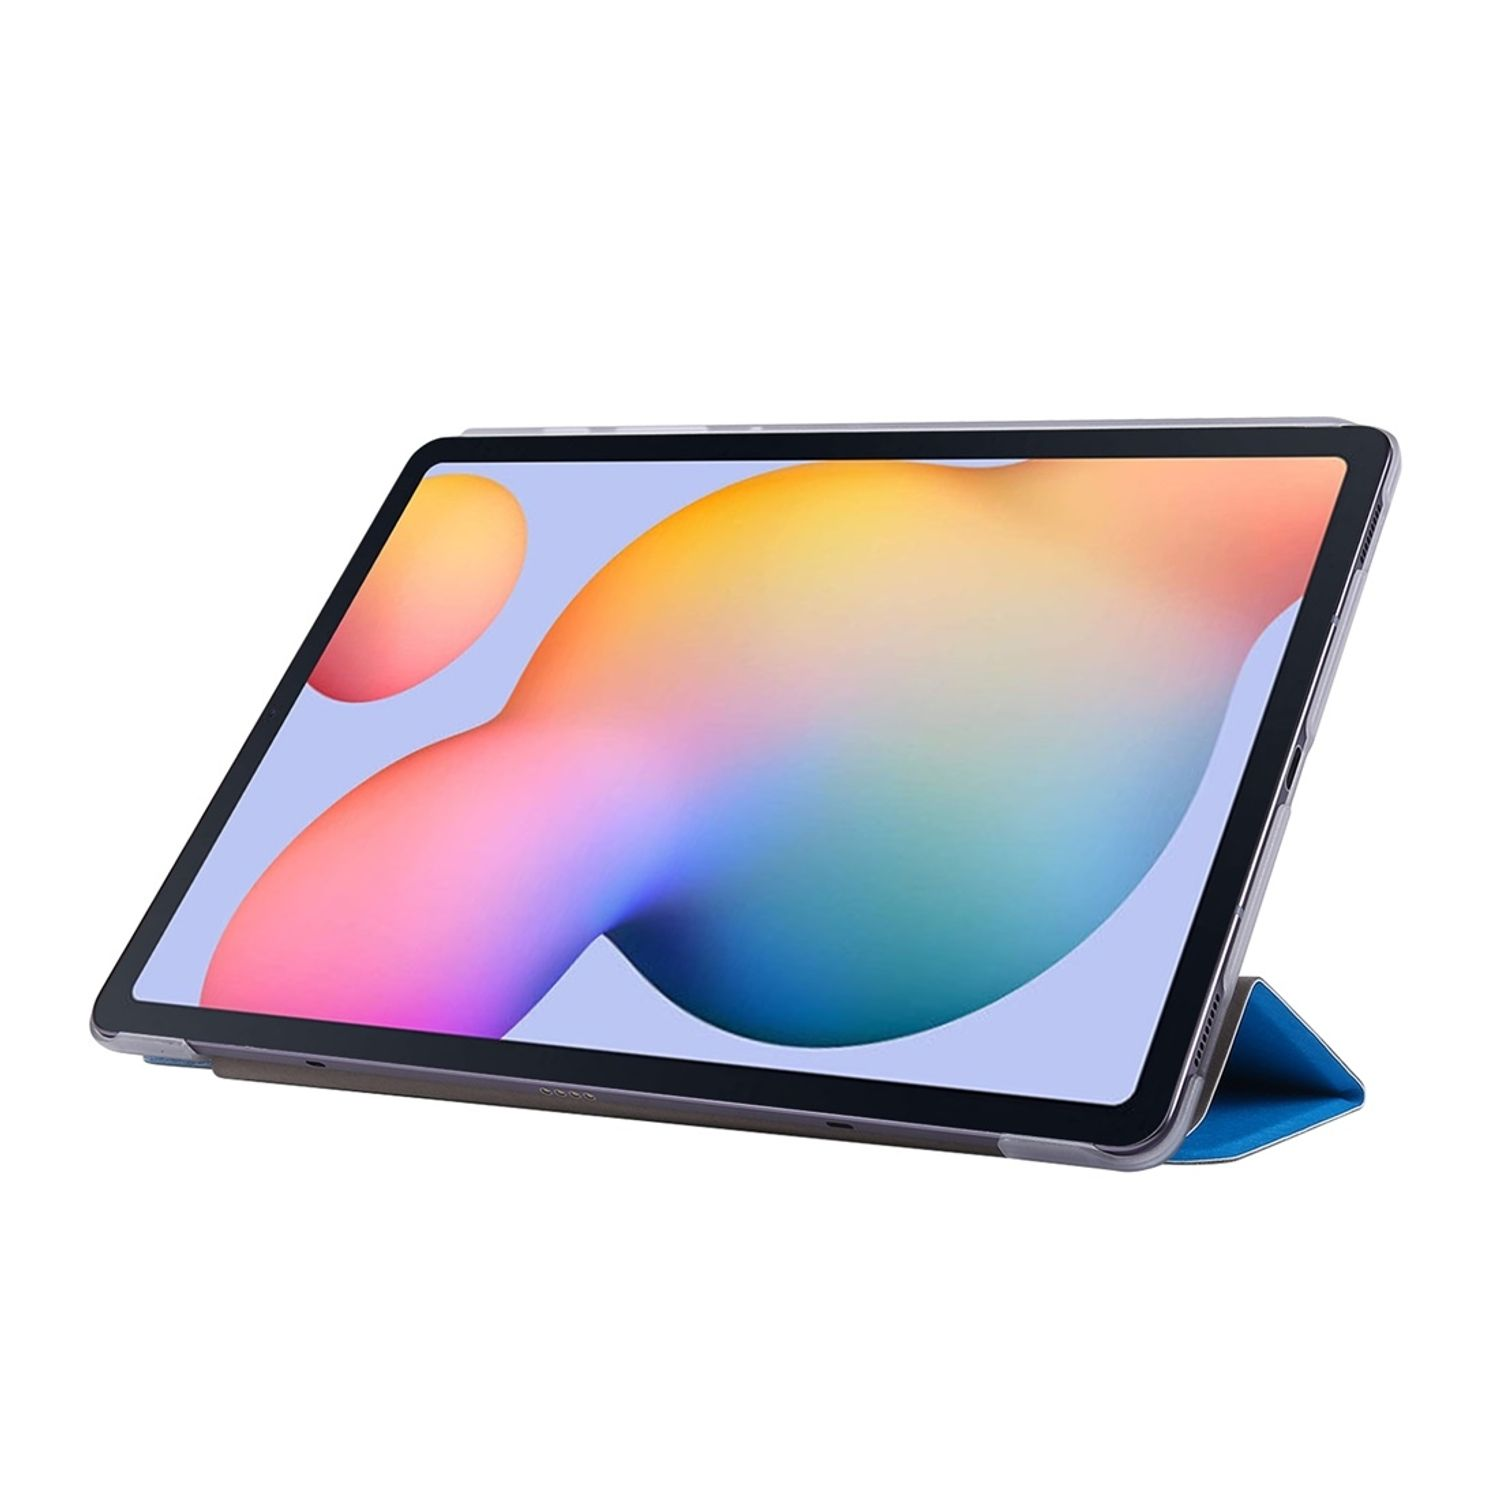 KÖNIG DESIGN Tablet-Hülle Tablet-Hülle Bookcover Kunstleder, Blau für Samsung